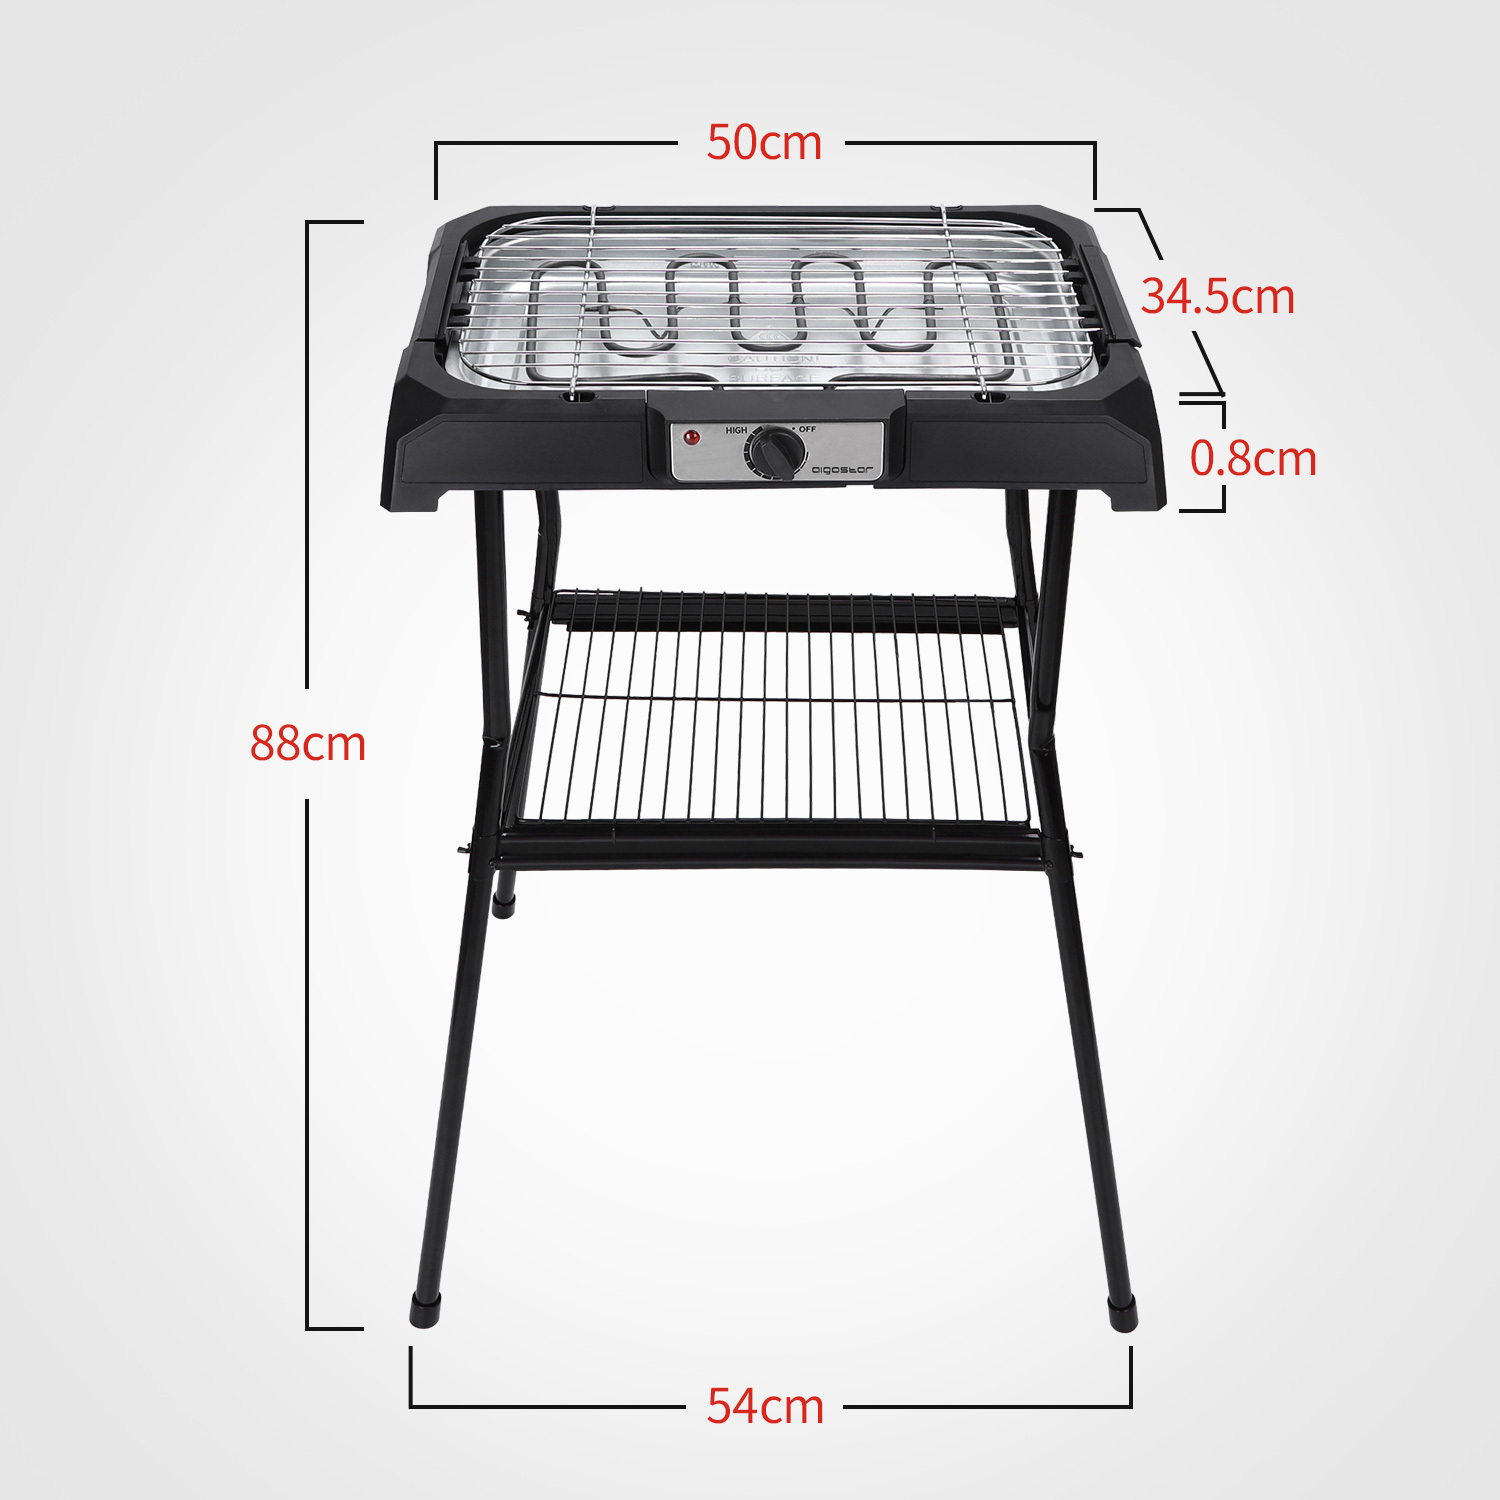 Tischgrill Standgrill 2000W, Barbecue-Standgrill, Grillfläche: 50cm x 34.5cm, schwarz